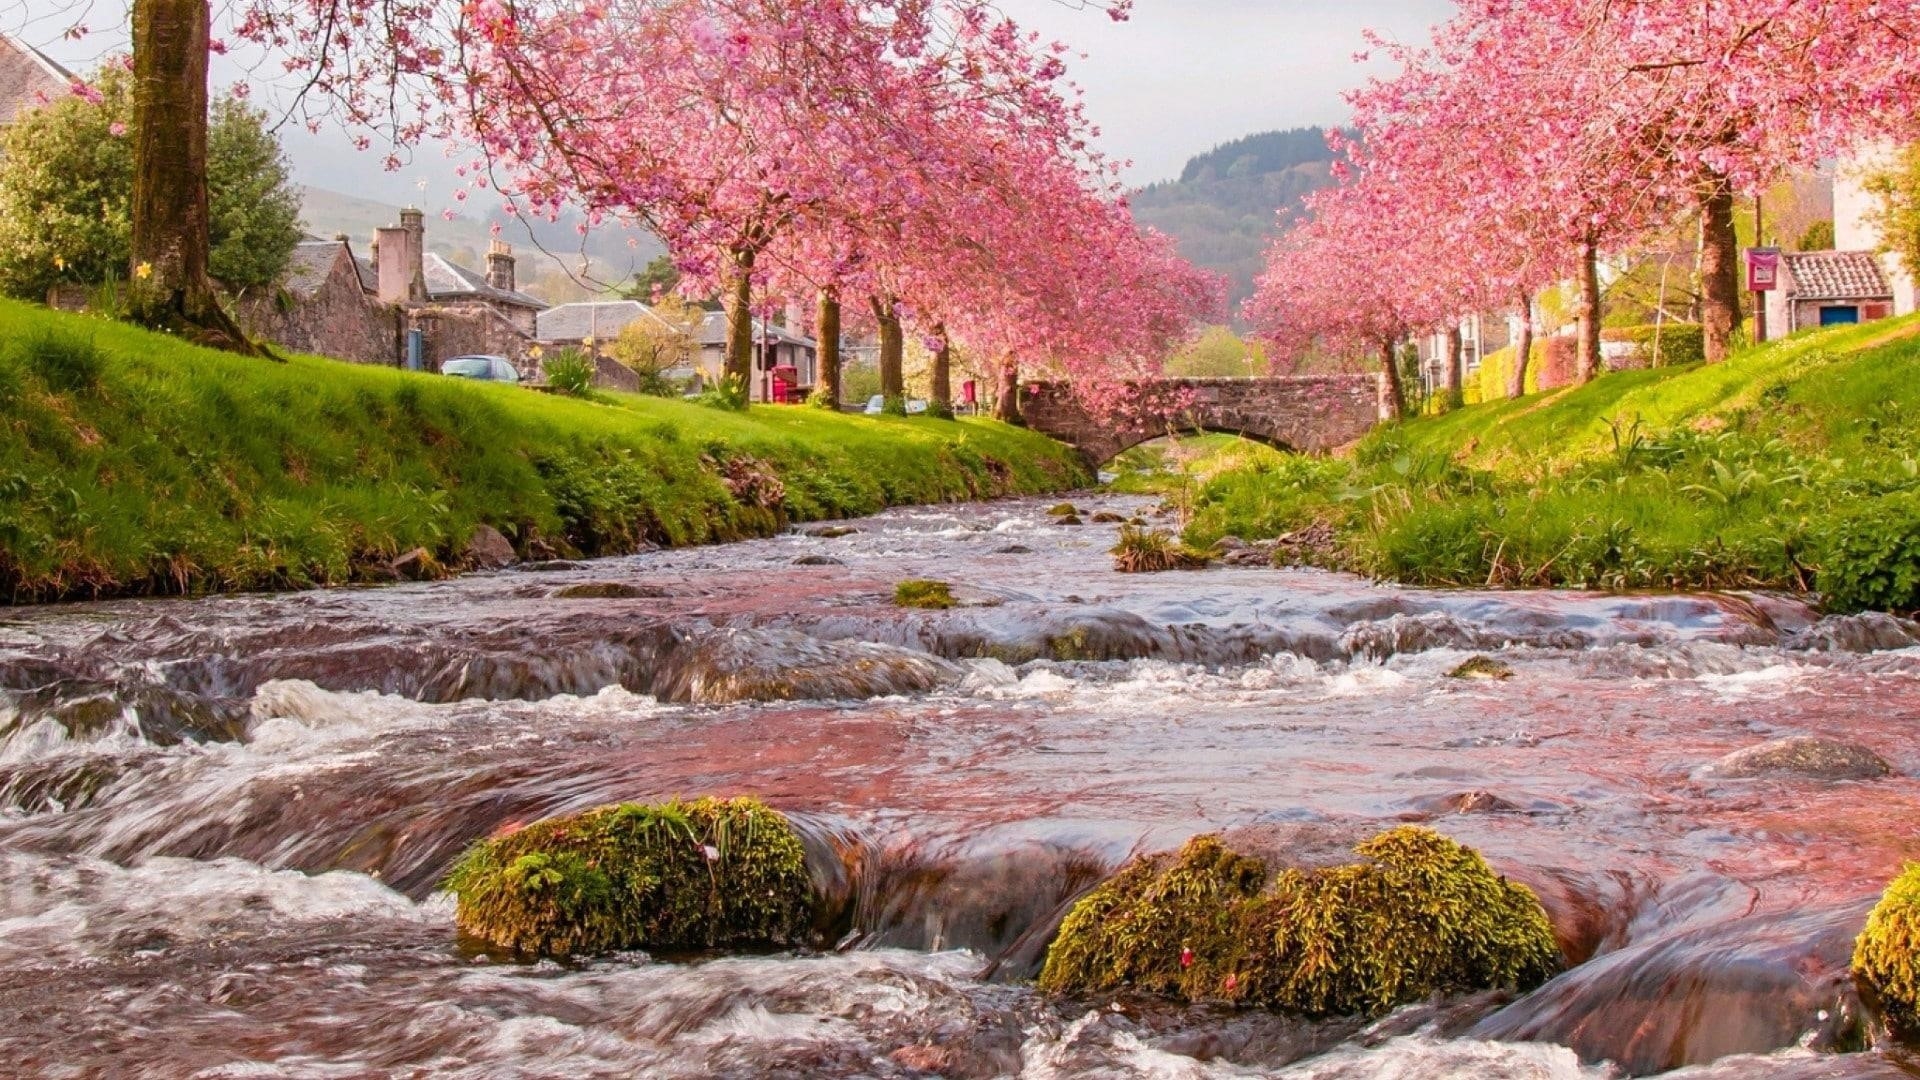 Ручей река с покрытыми водорослями камнями между домами с цветущими деревьями природа обои скачать